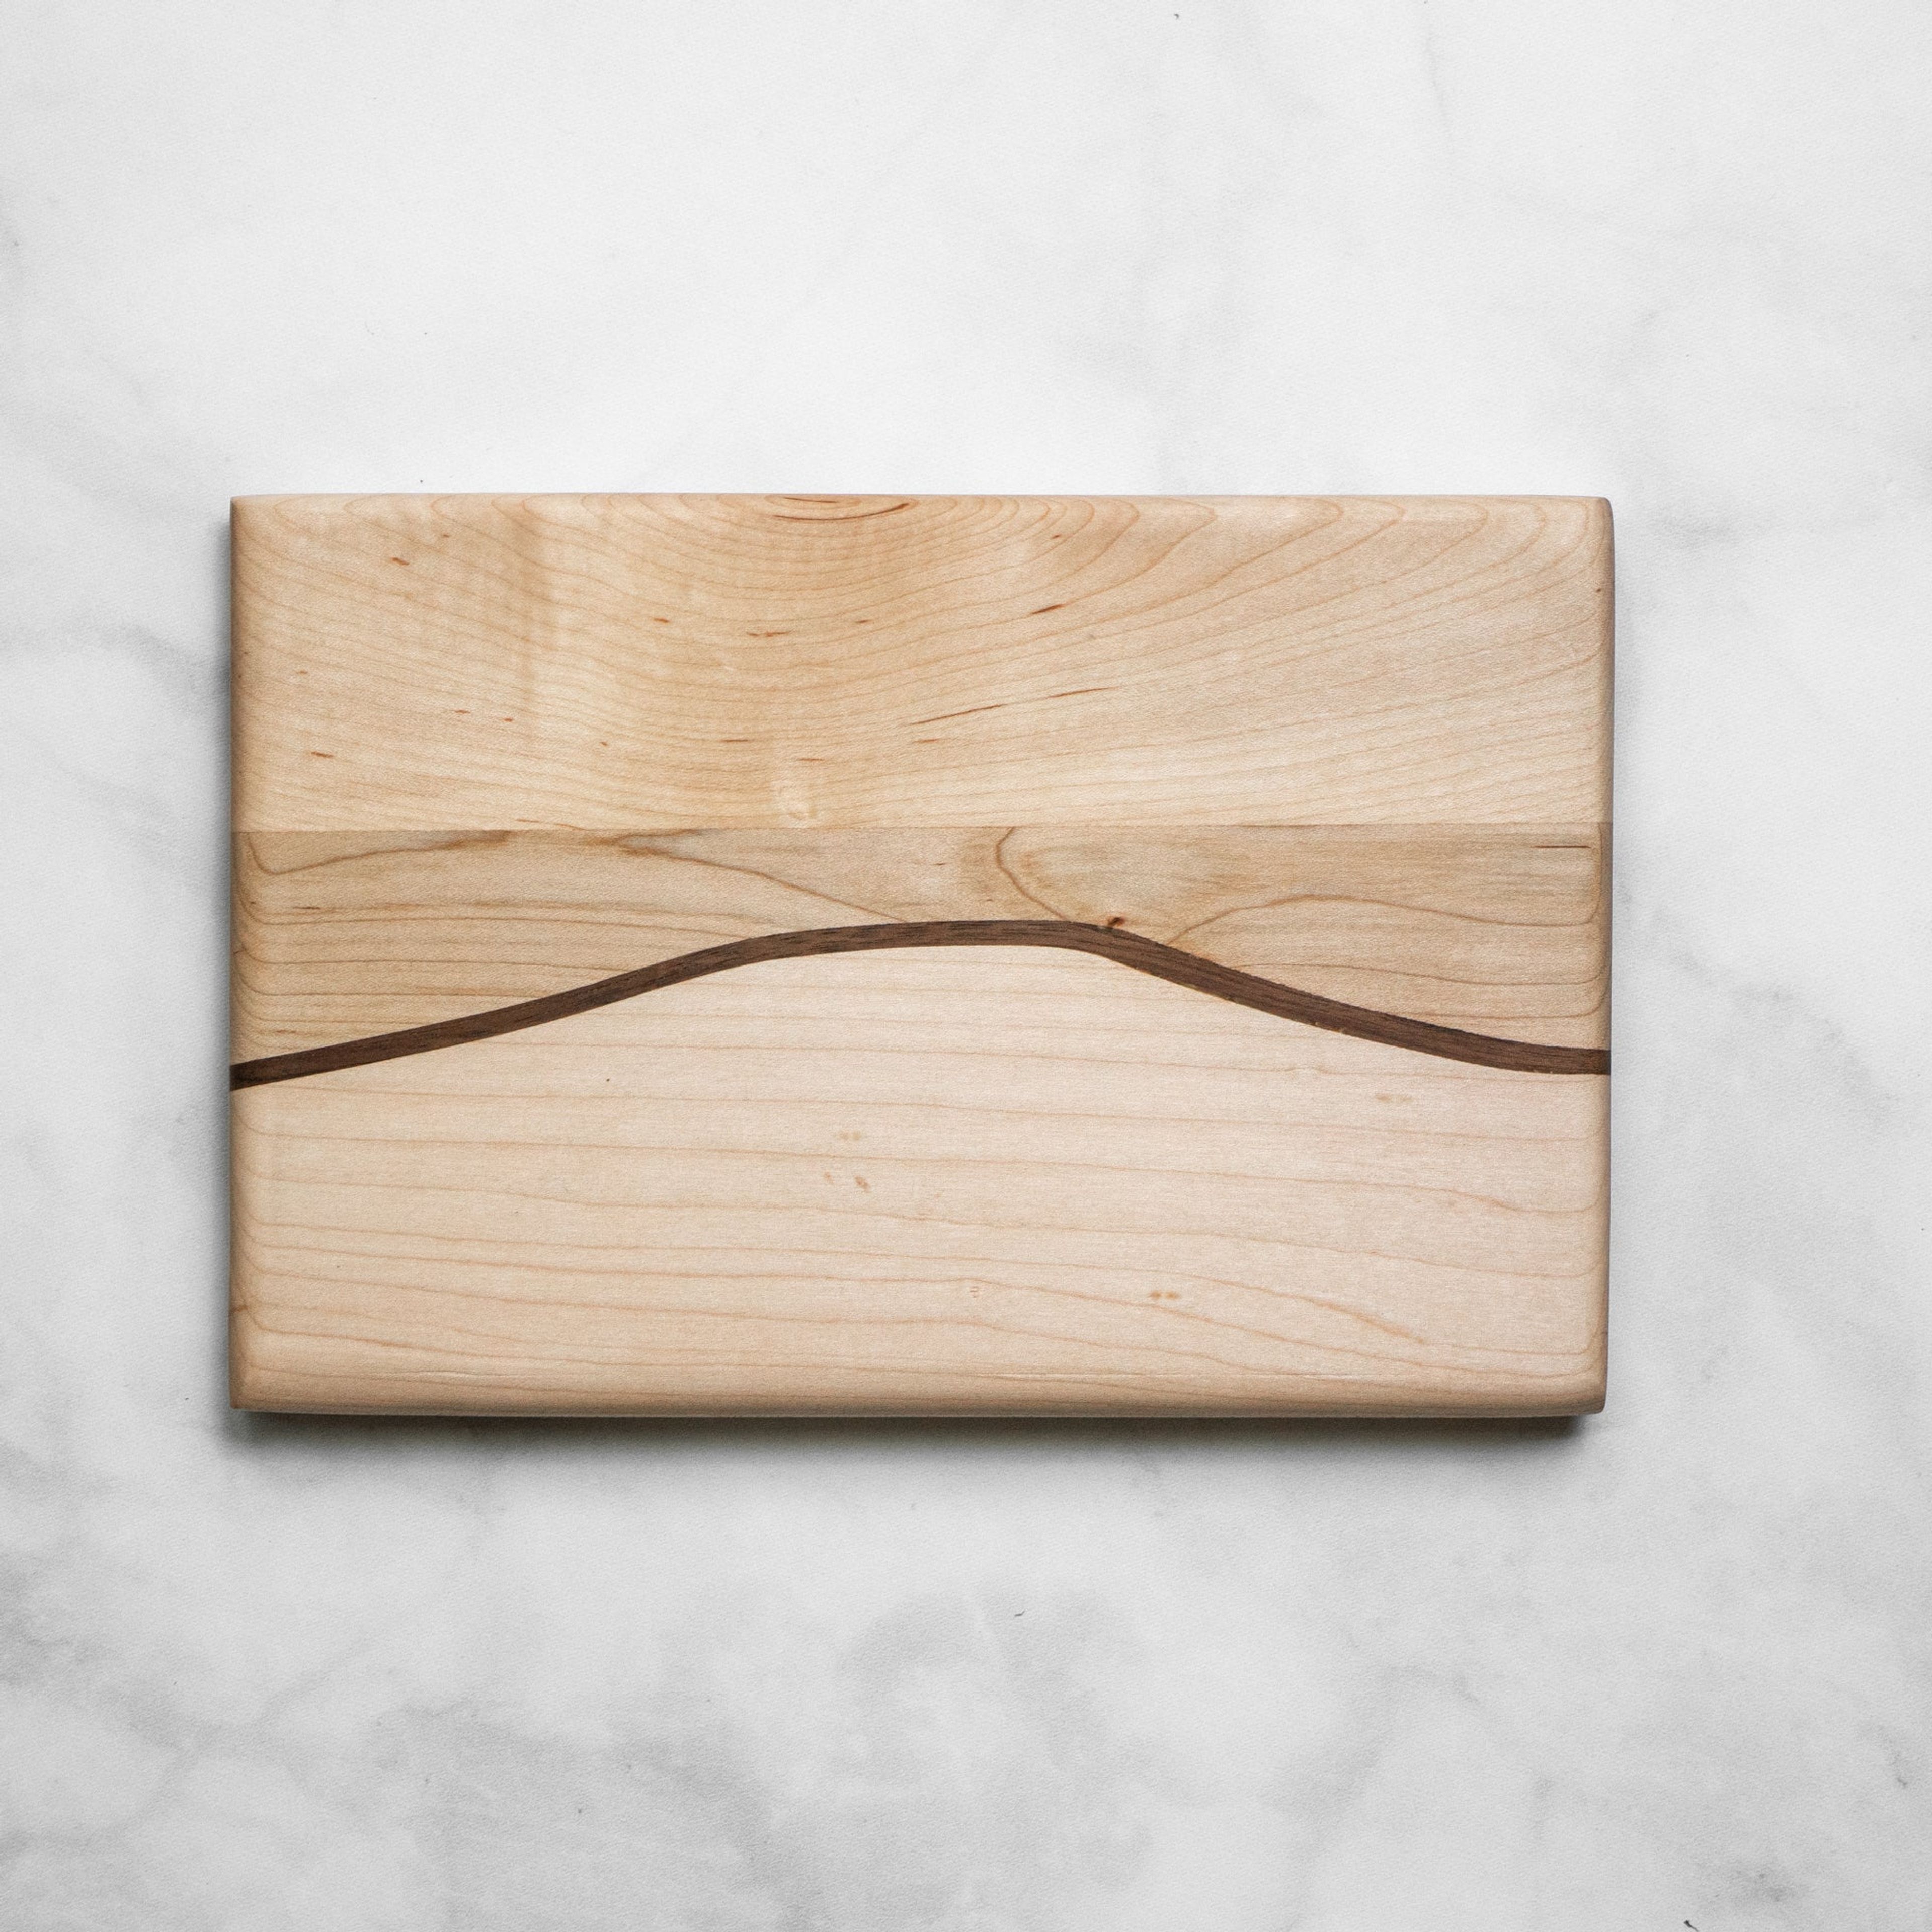 9" Wooden Cutting Board